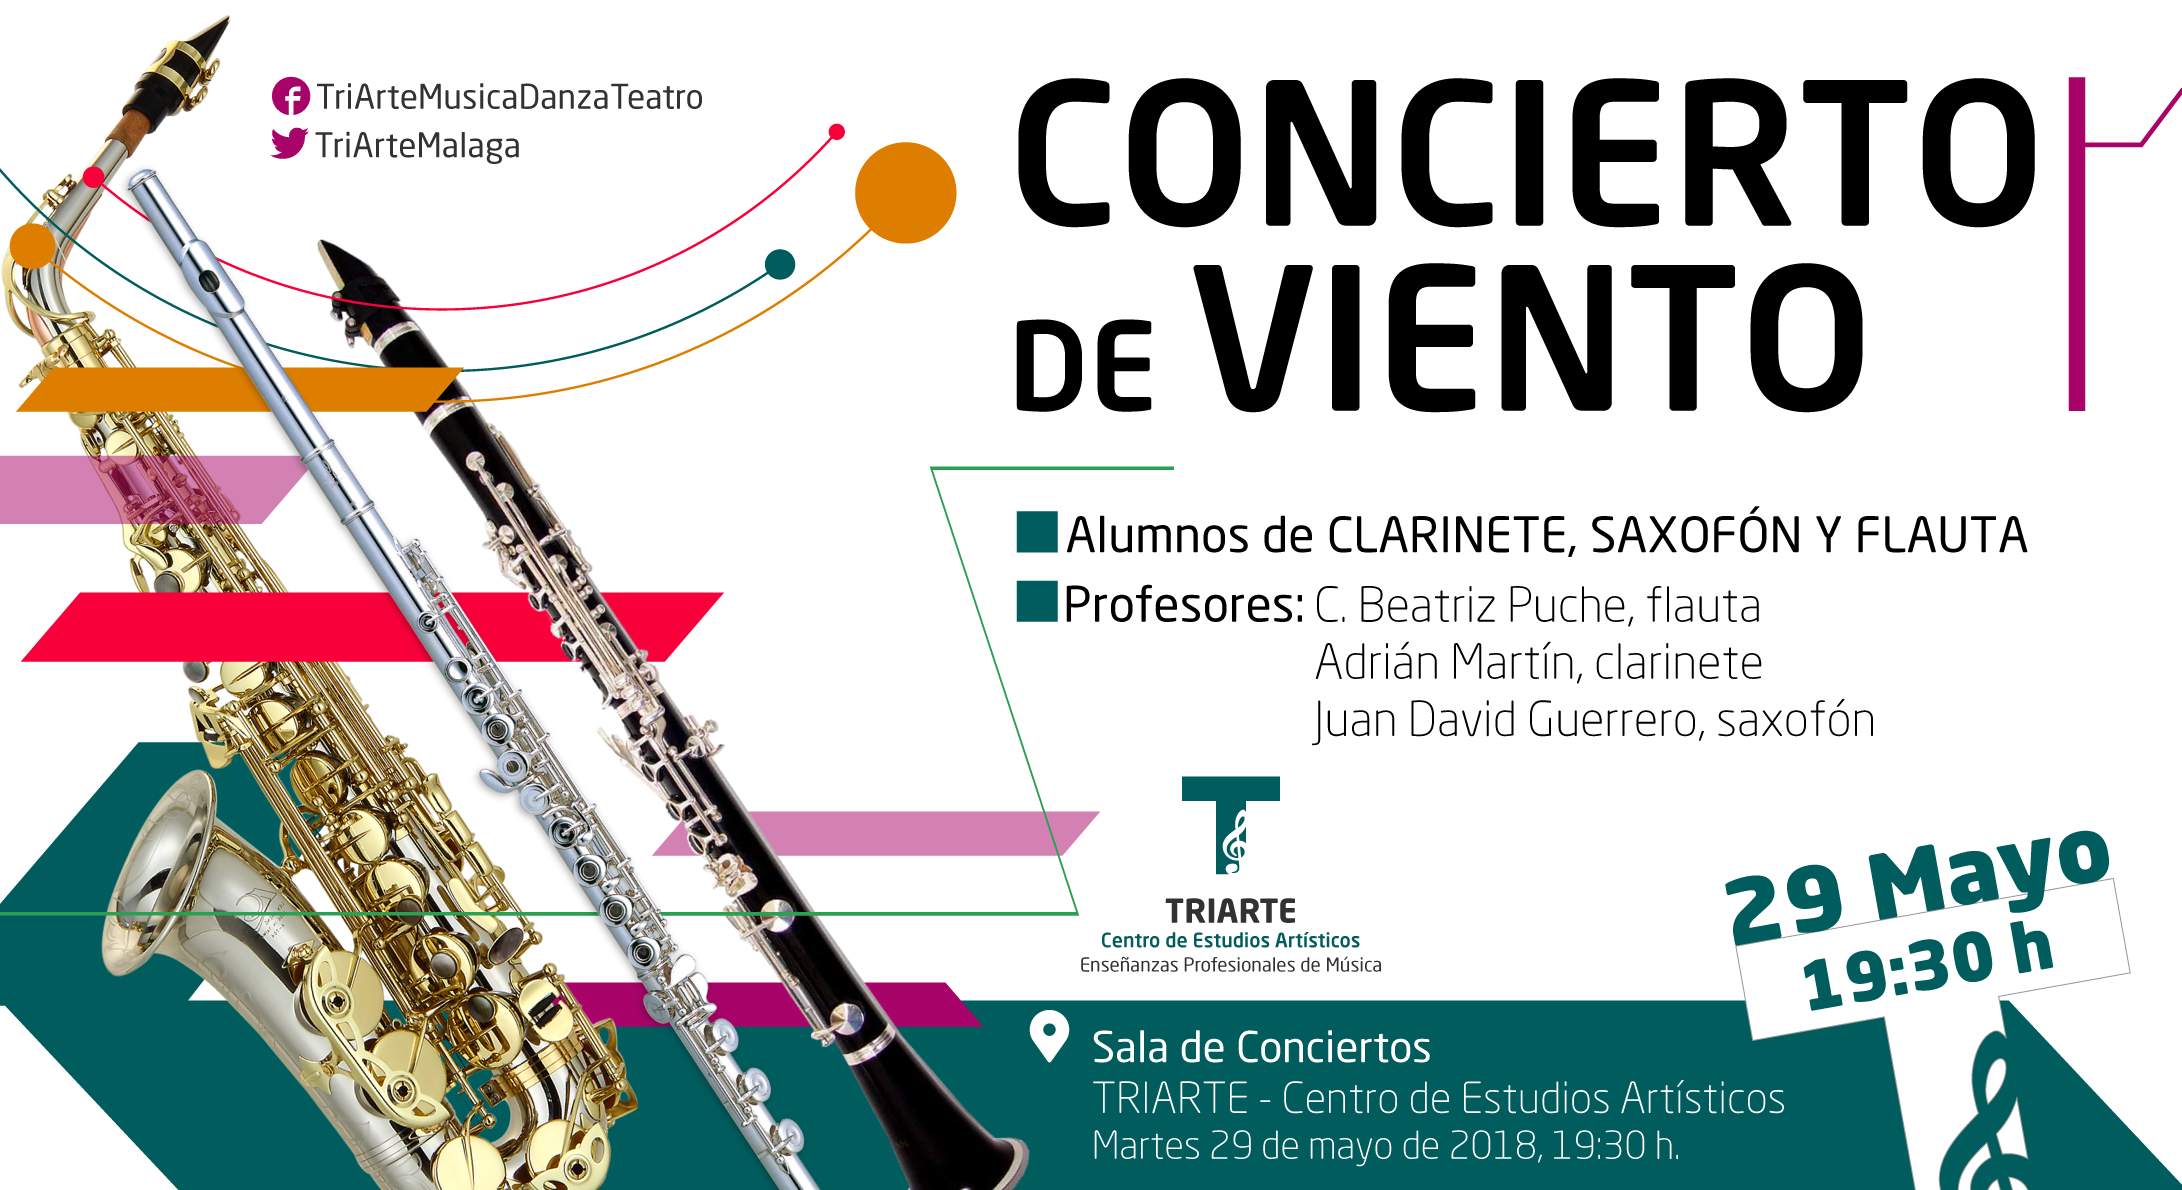 Concierto de Flauta, Clarinete y Saxofón. Triarte, Málaga